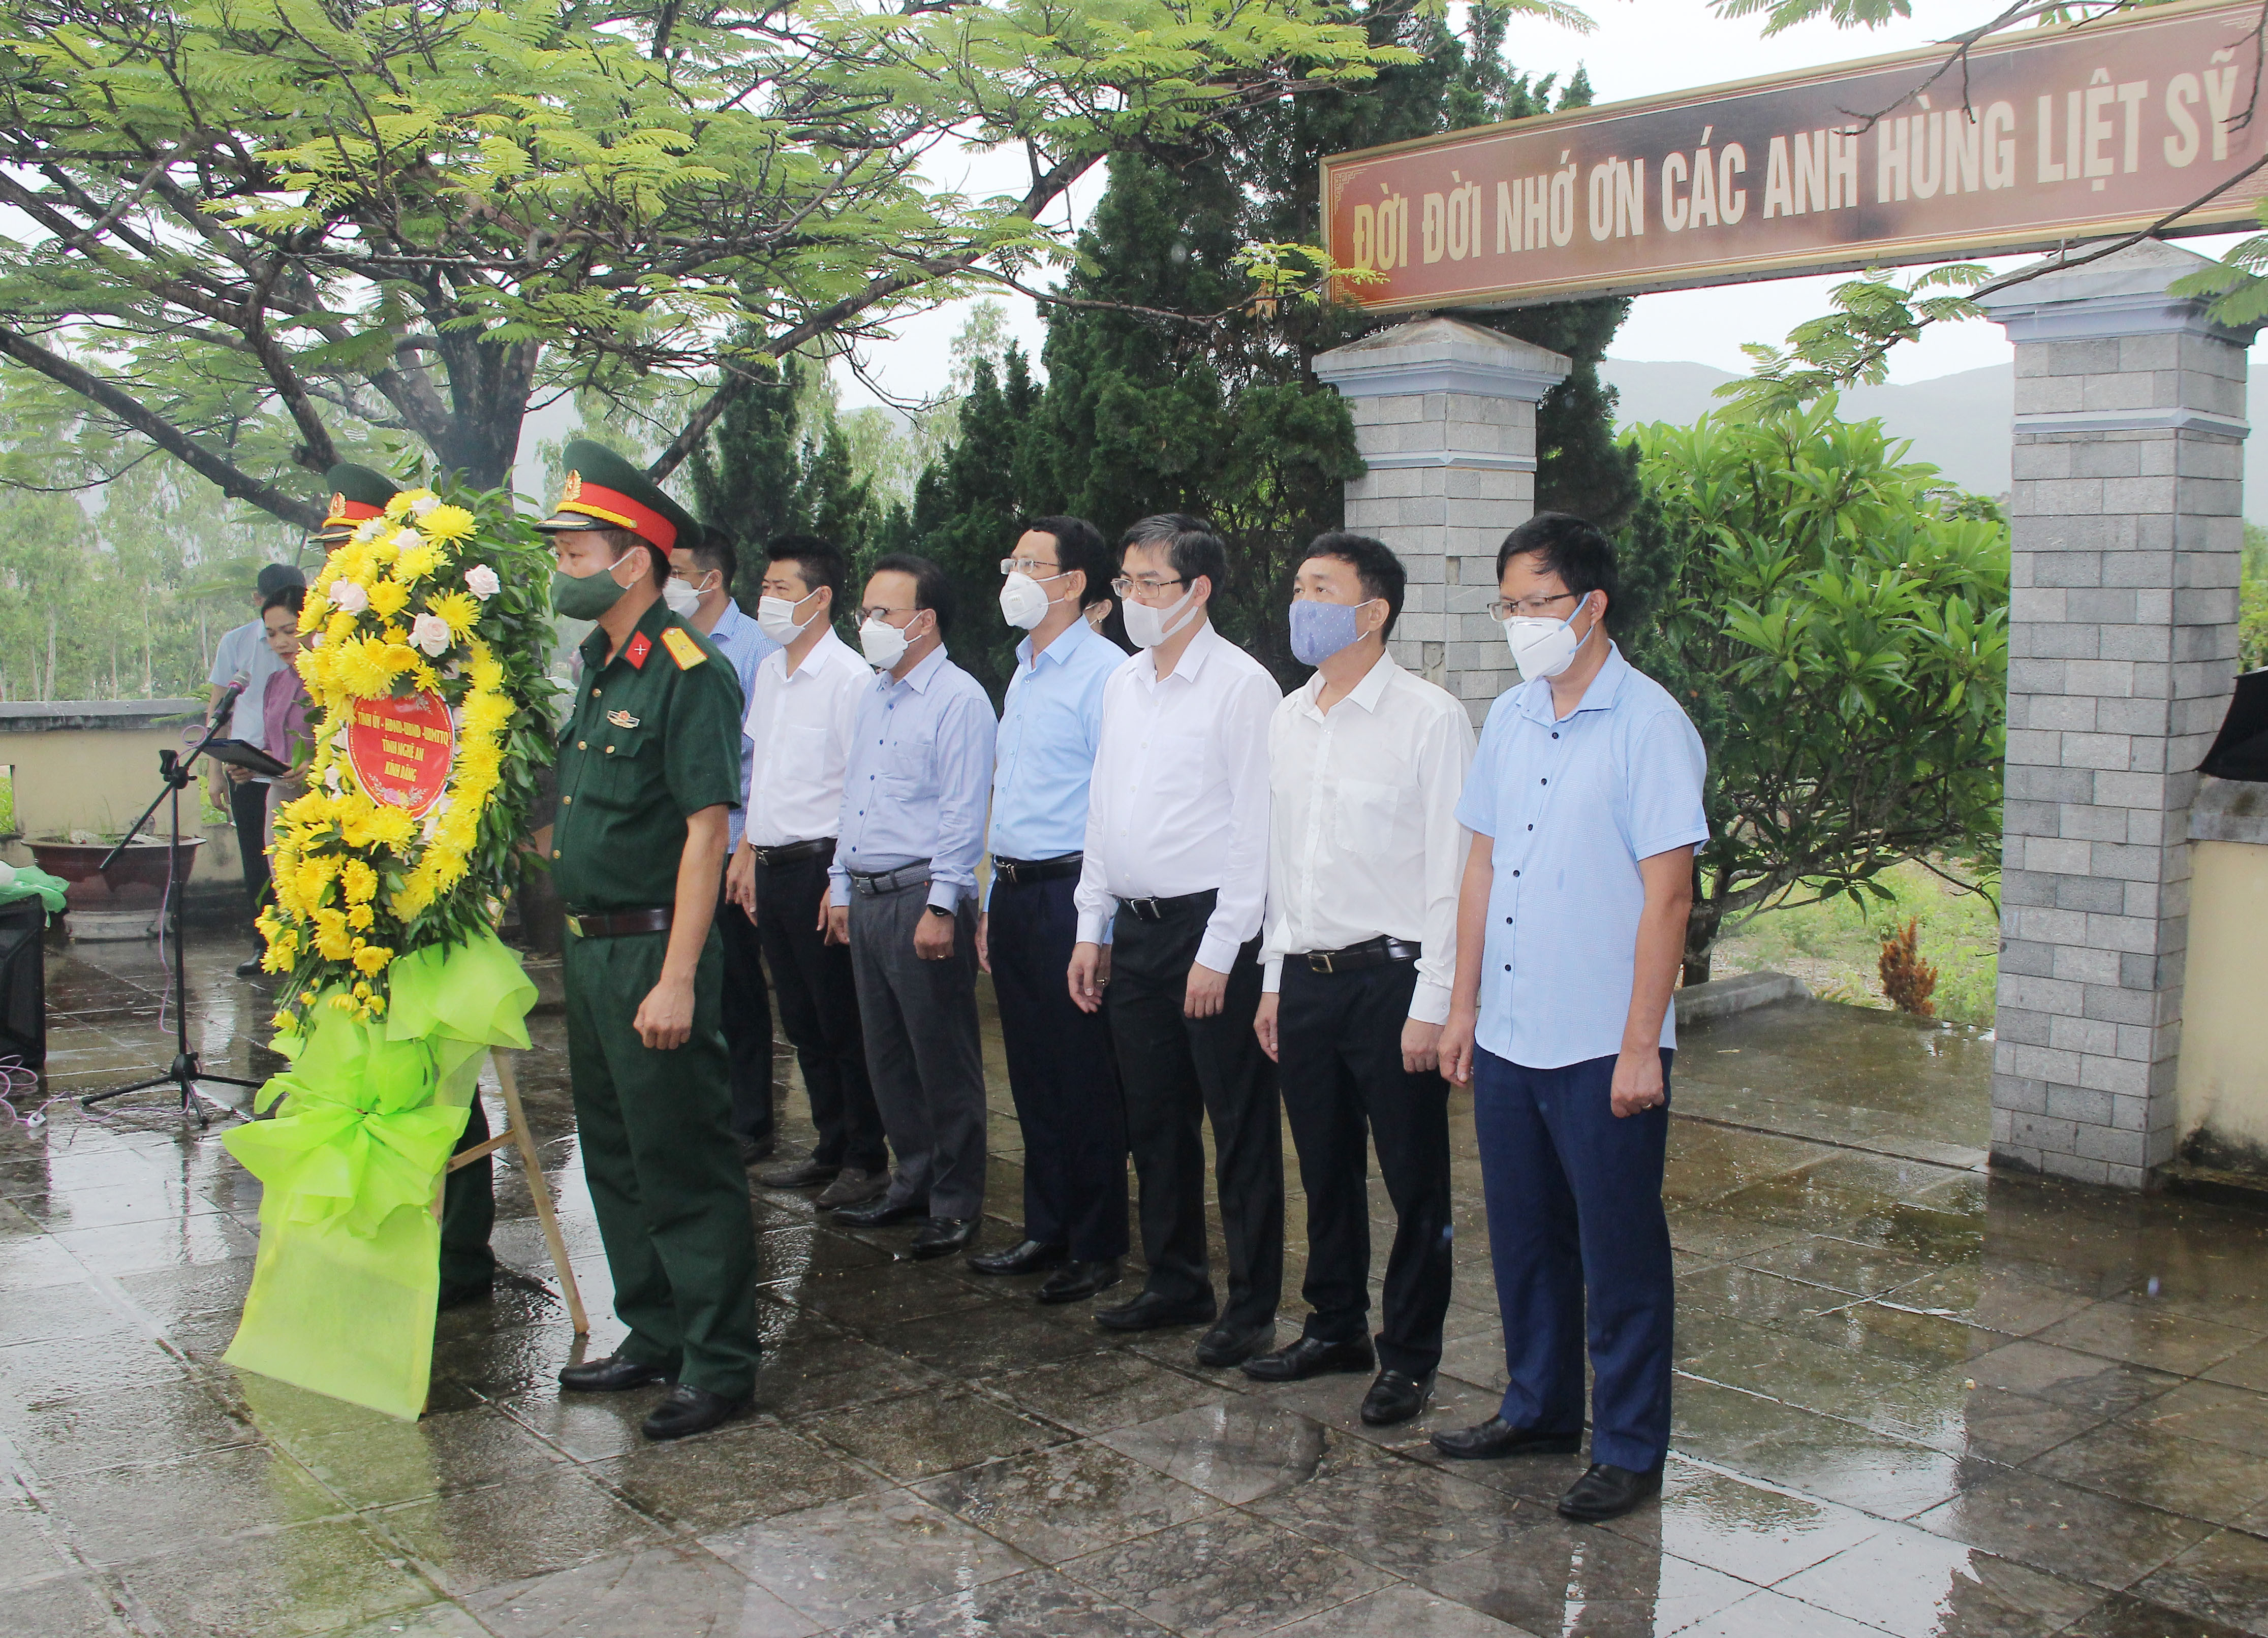 Đoàn công tác của tỉnh làm lễ tưởng niệm các anh hùng liệt sỹ tại nghĩa trang. Ảnh: Mai Hoa